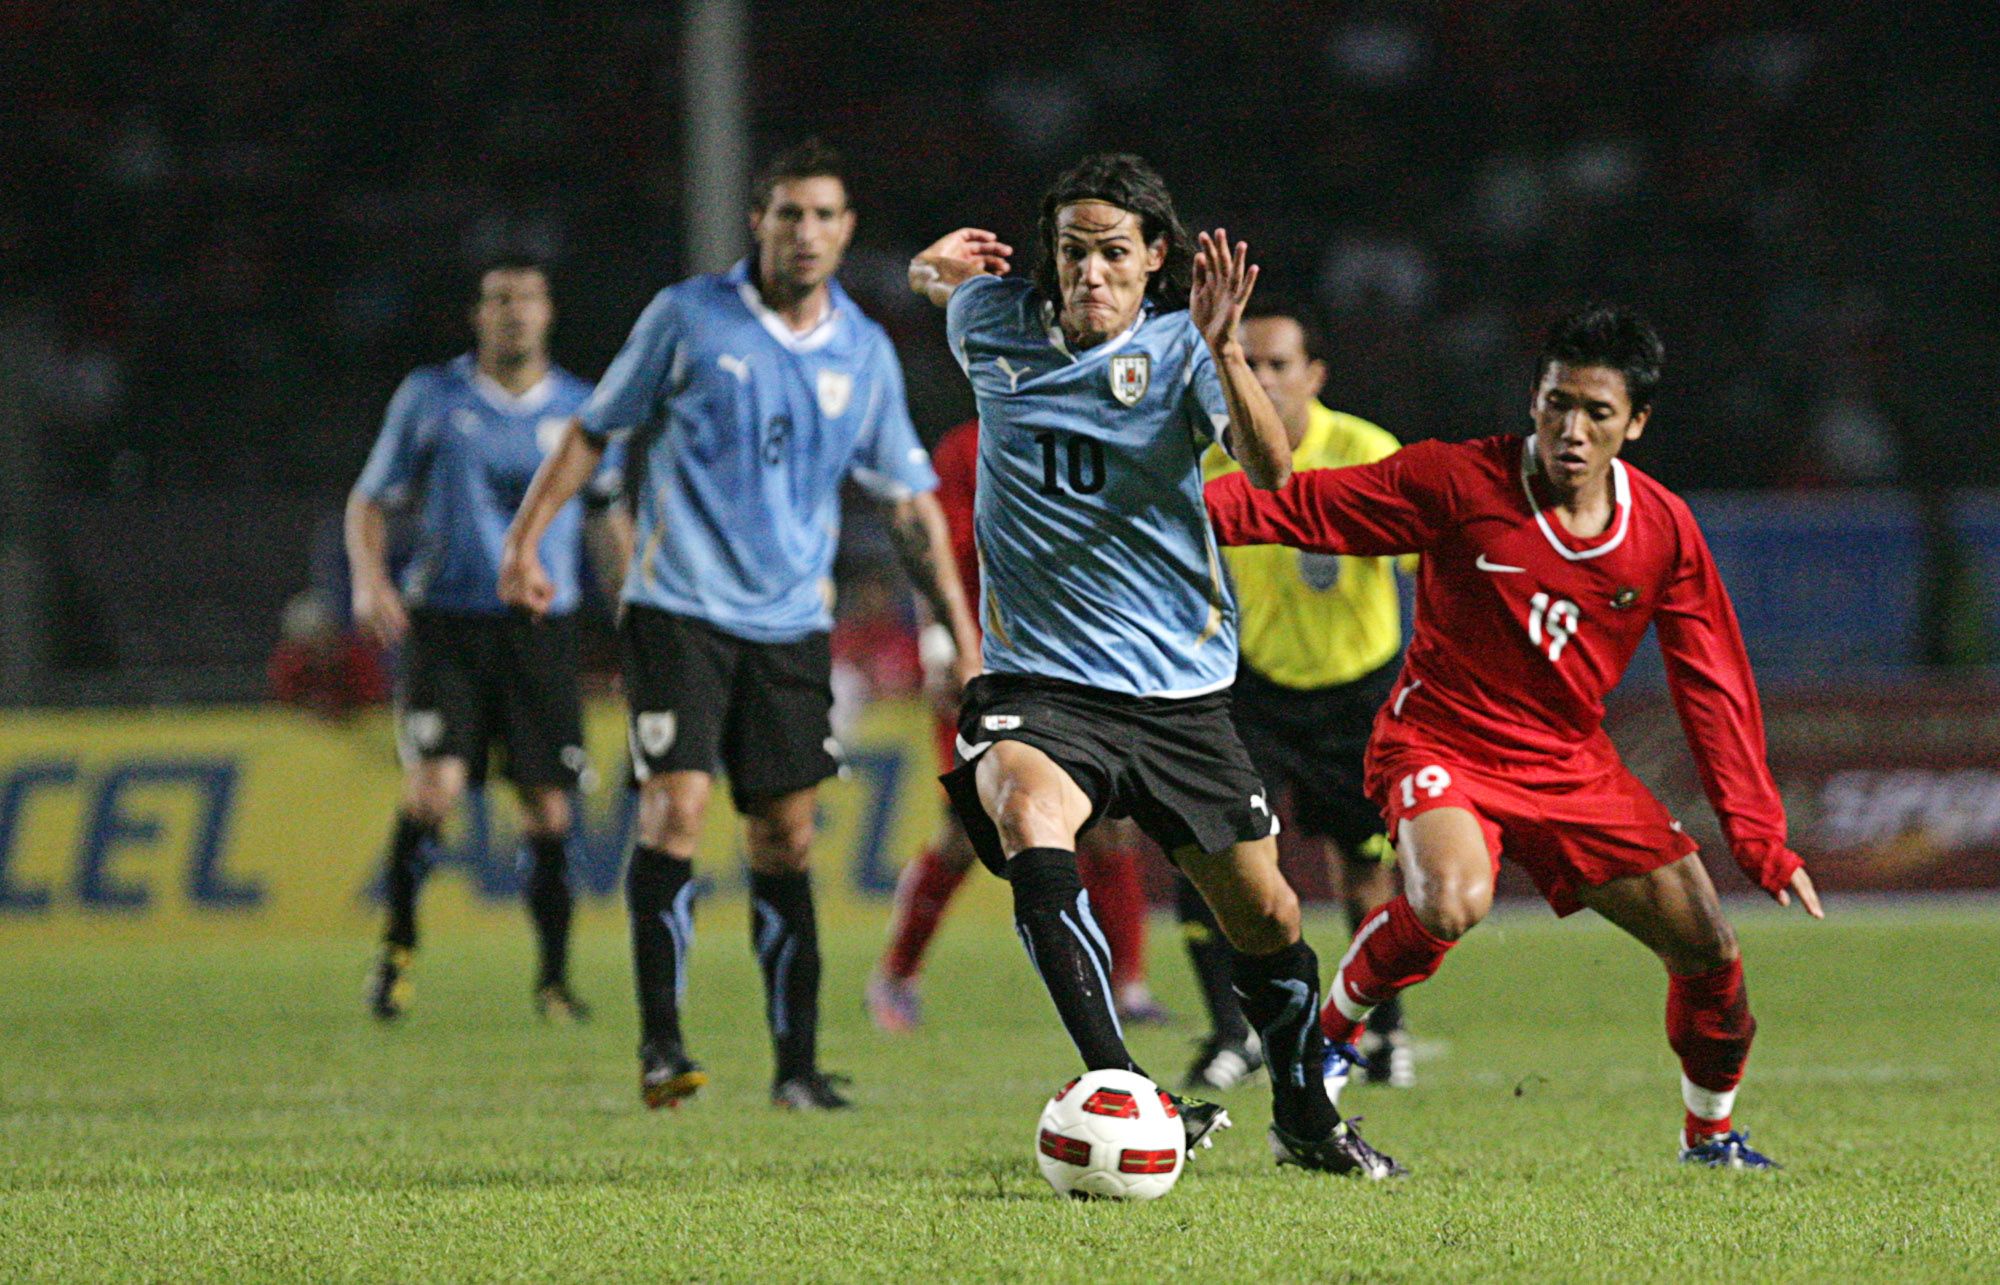 Edinson Cavani (depan), pemain timnas Uruguay, melewati adangan Ahmad Bustomi dalam pertandingan uji coba di Stadion Utama Gelora Bung Karno, Senayan, Jakarta pada 2010.